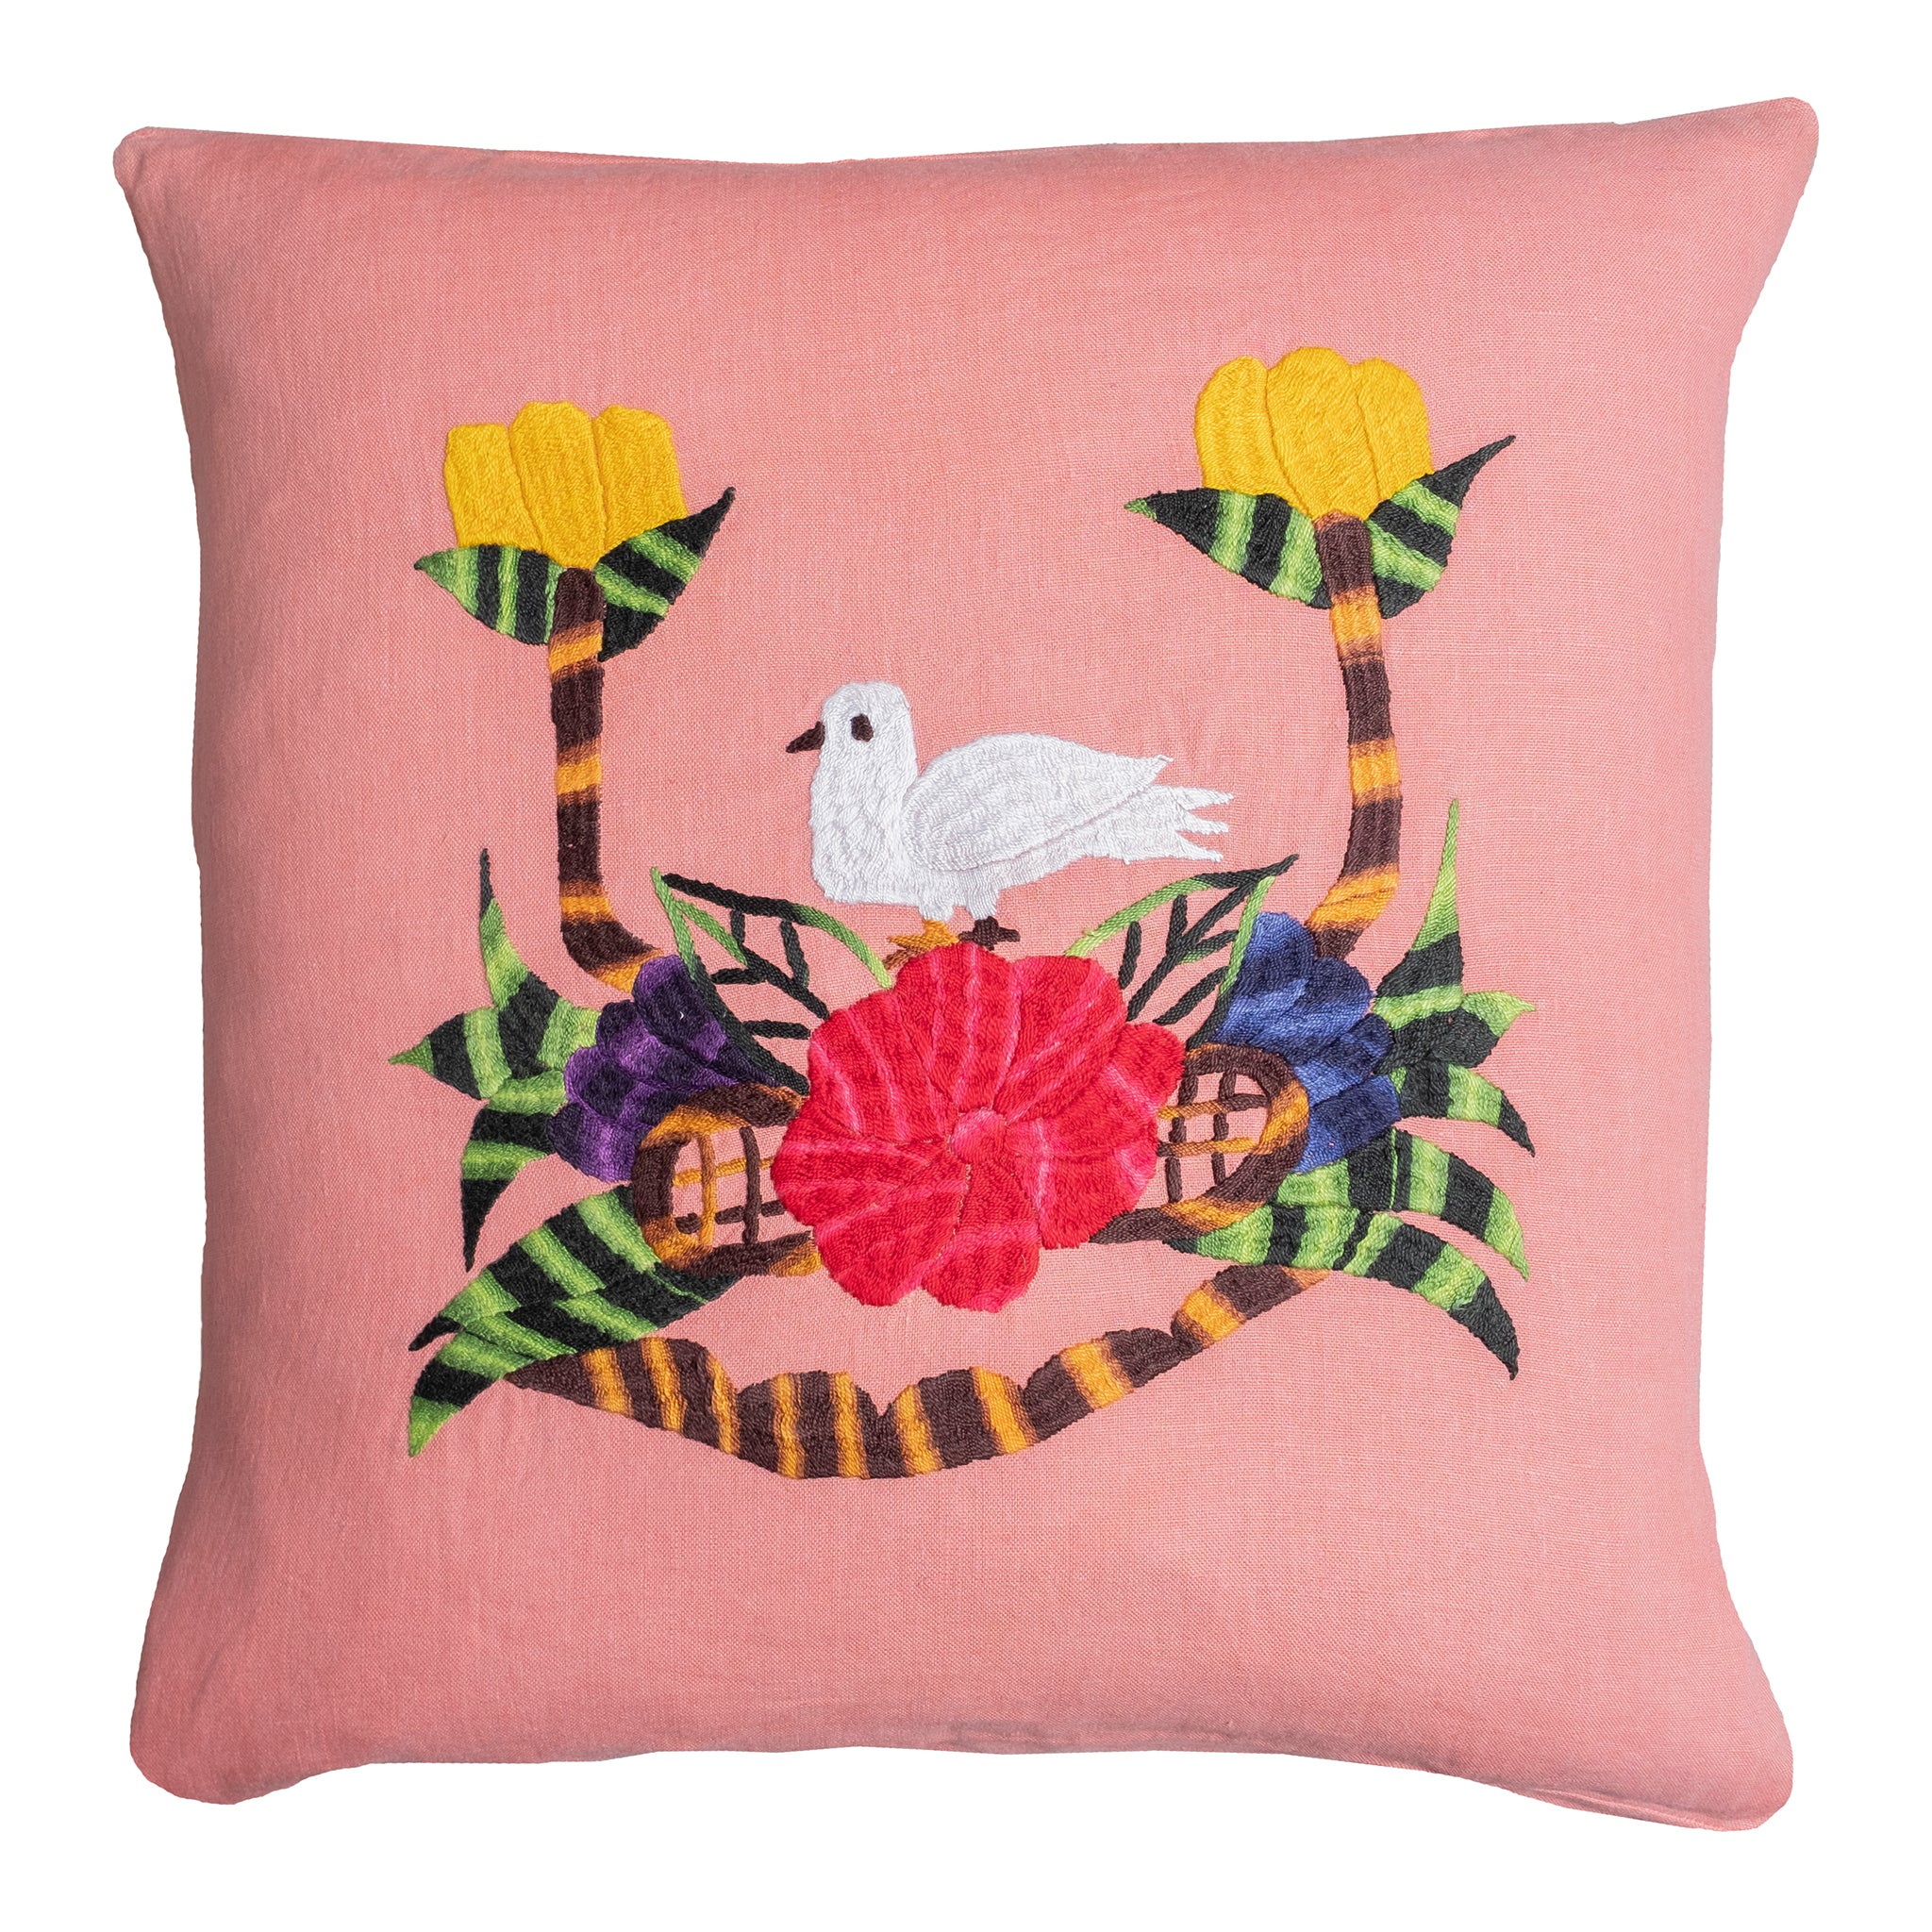 Bird pillow on pink linen